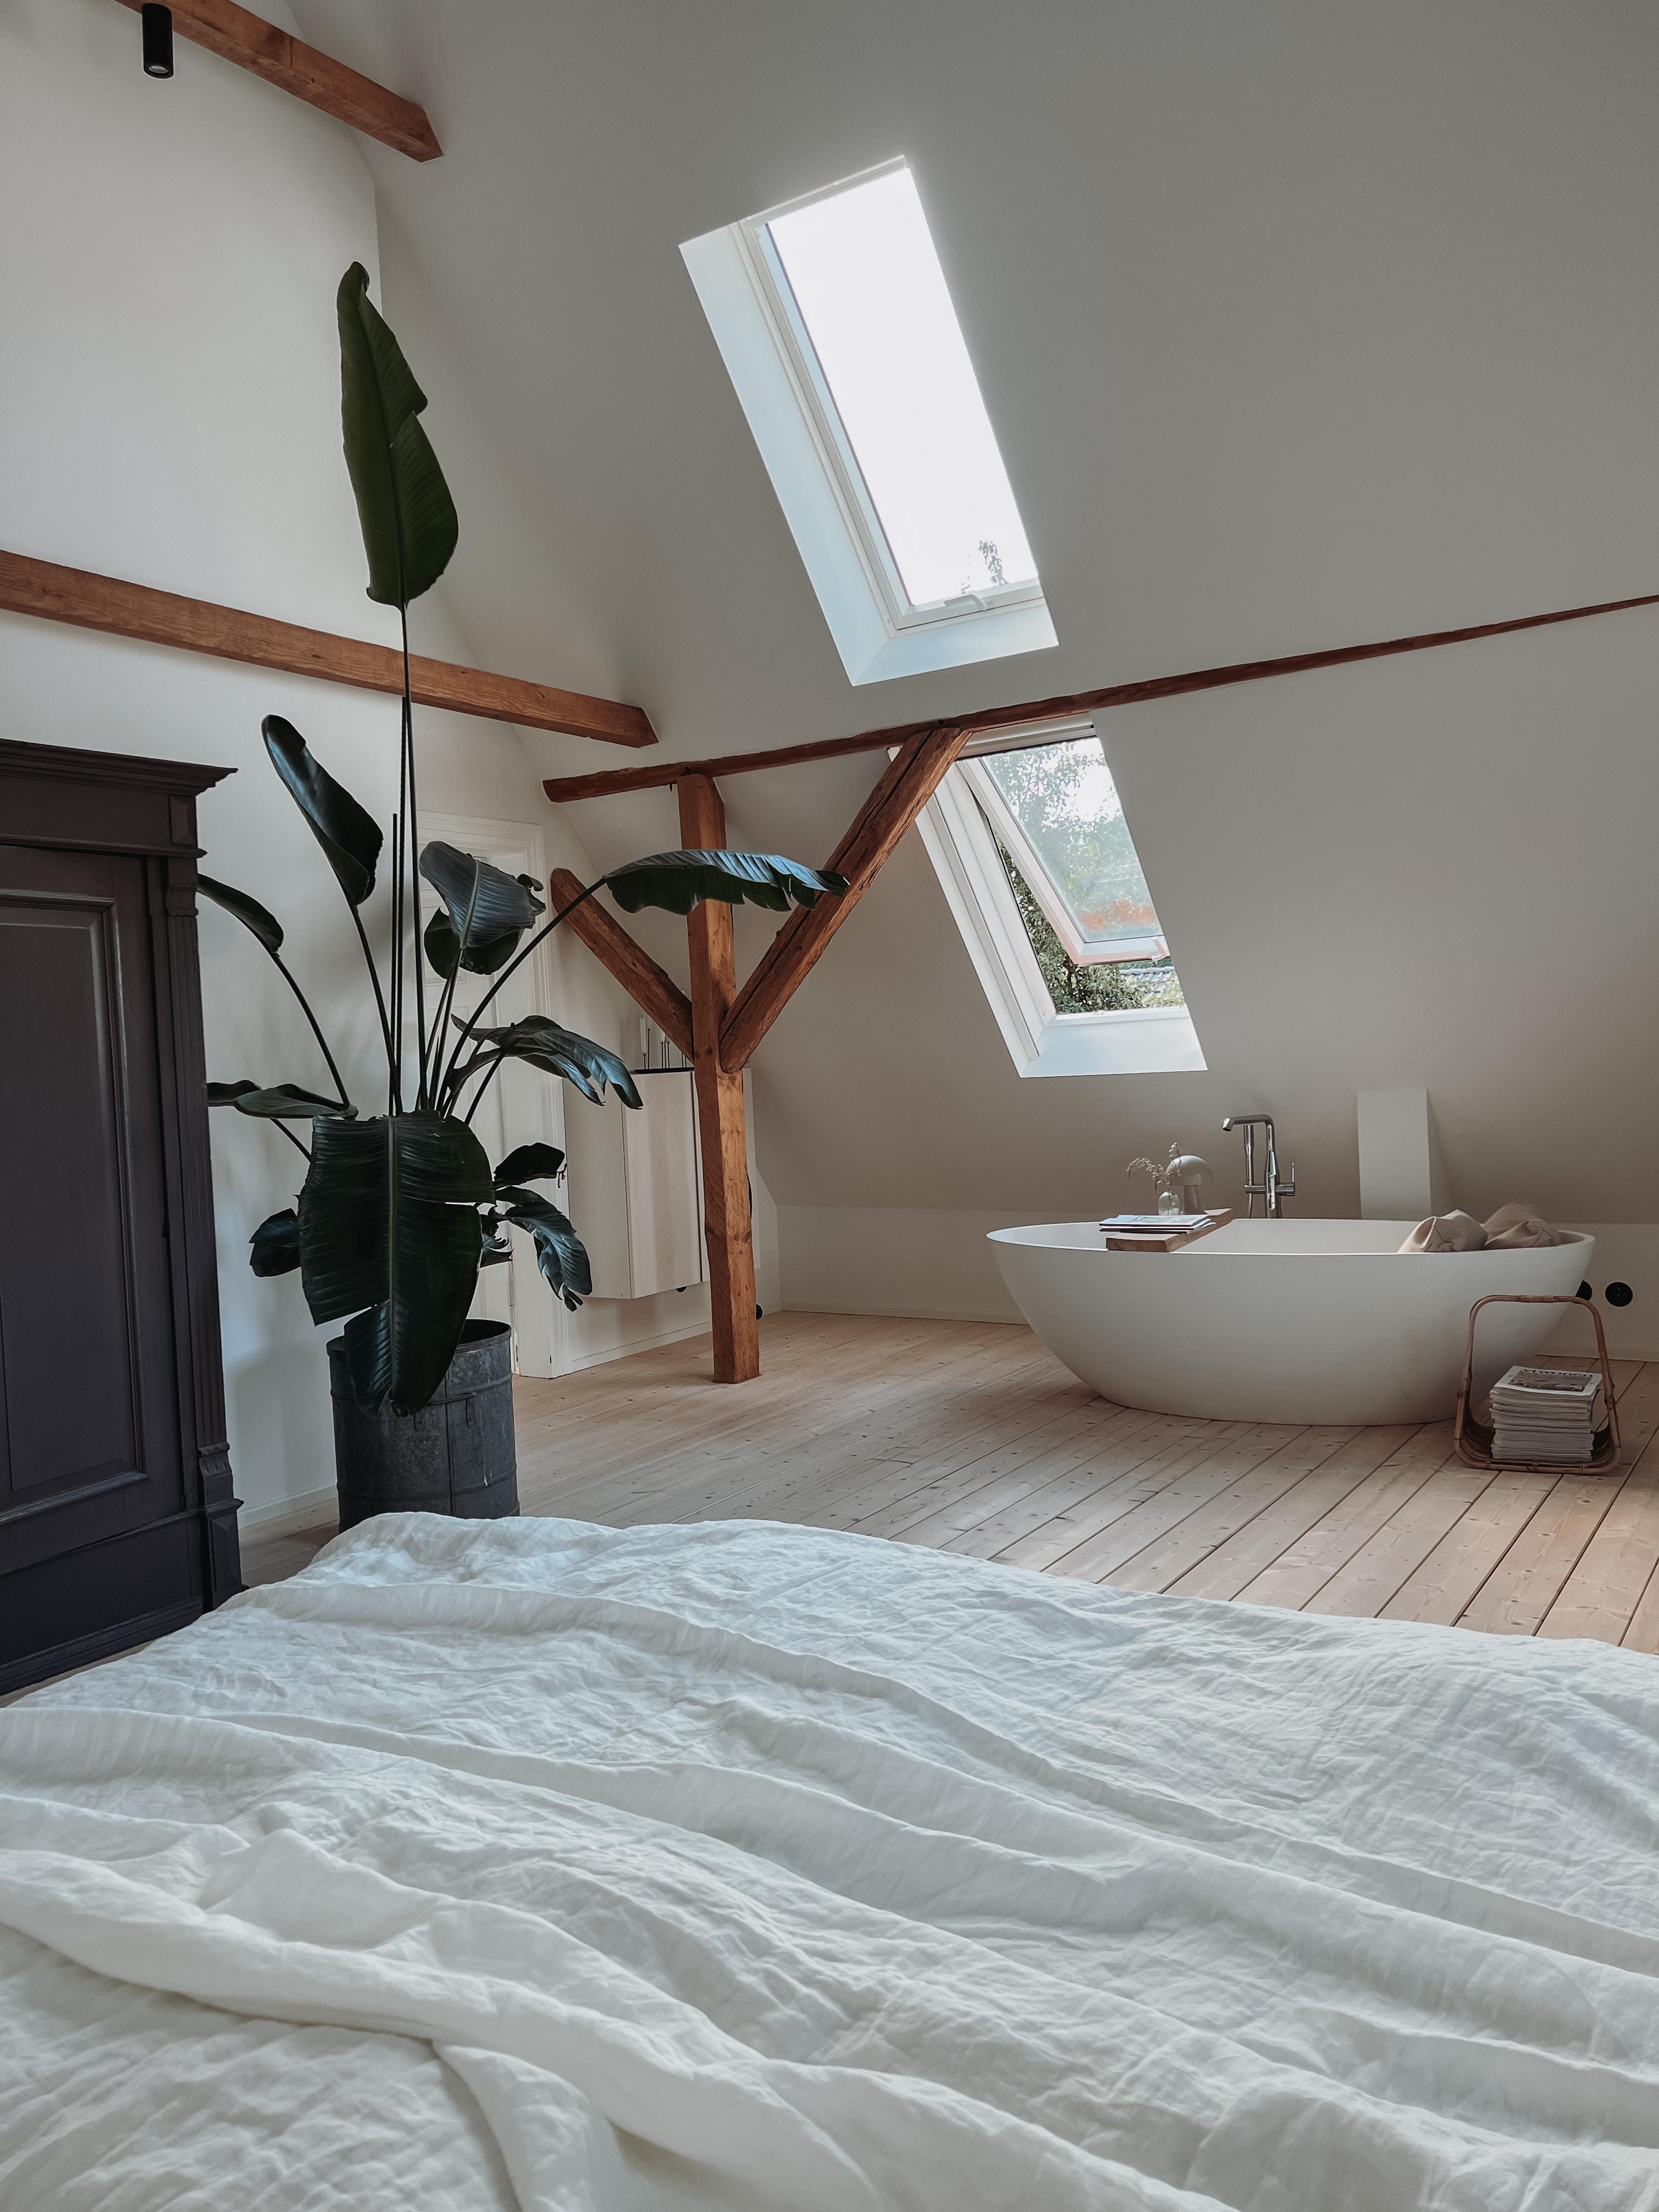 #schlafzimmer #bathroom #bedroom #badewanne #dachfenster #pflanzen #bett #hygge #altbau #altbauliebe #scheunenumbau 